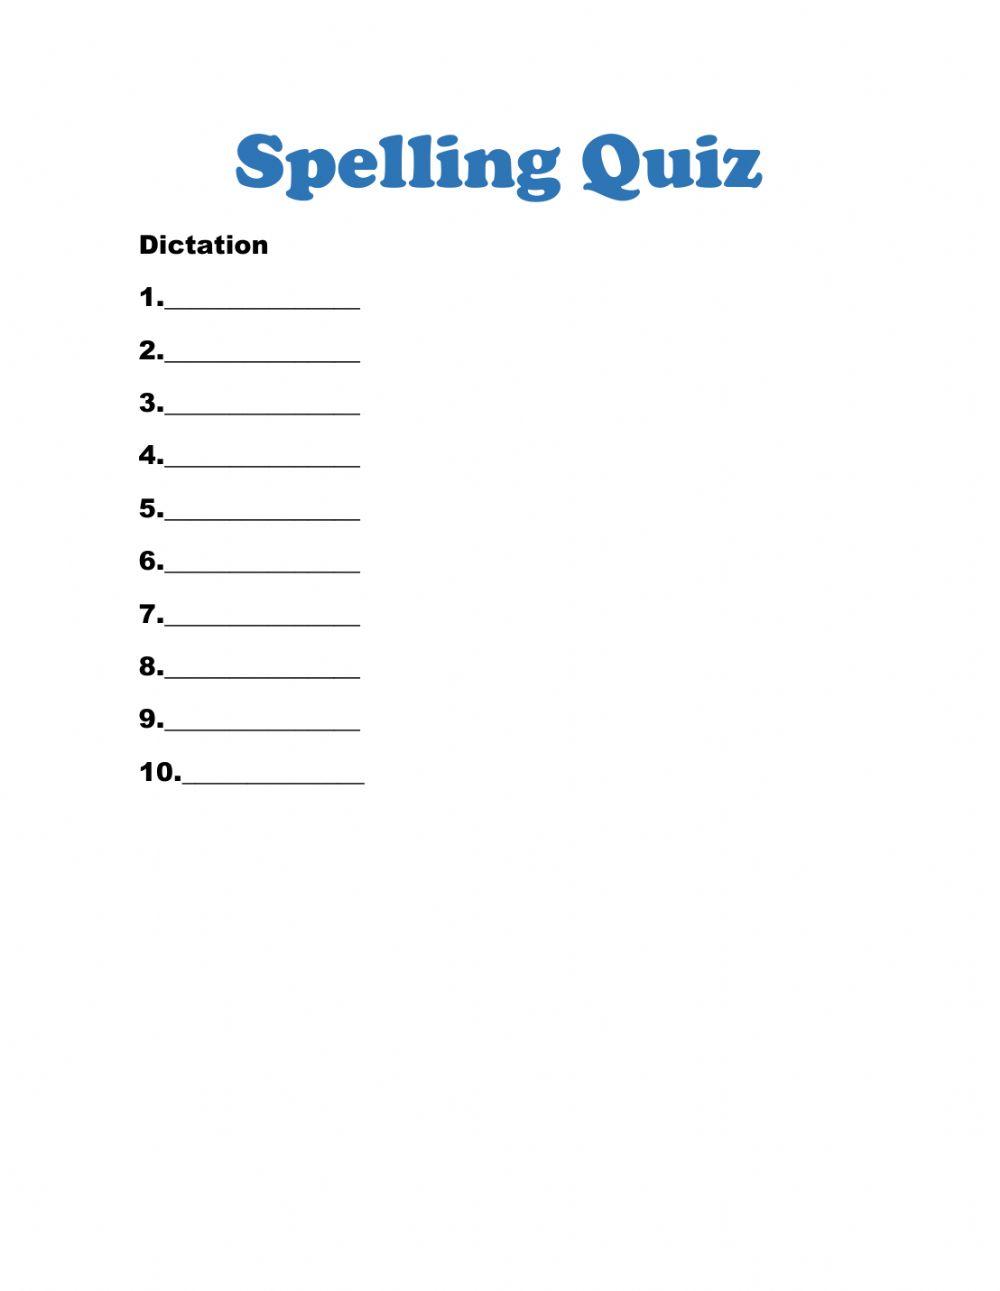 Spelling quizList -8